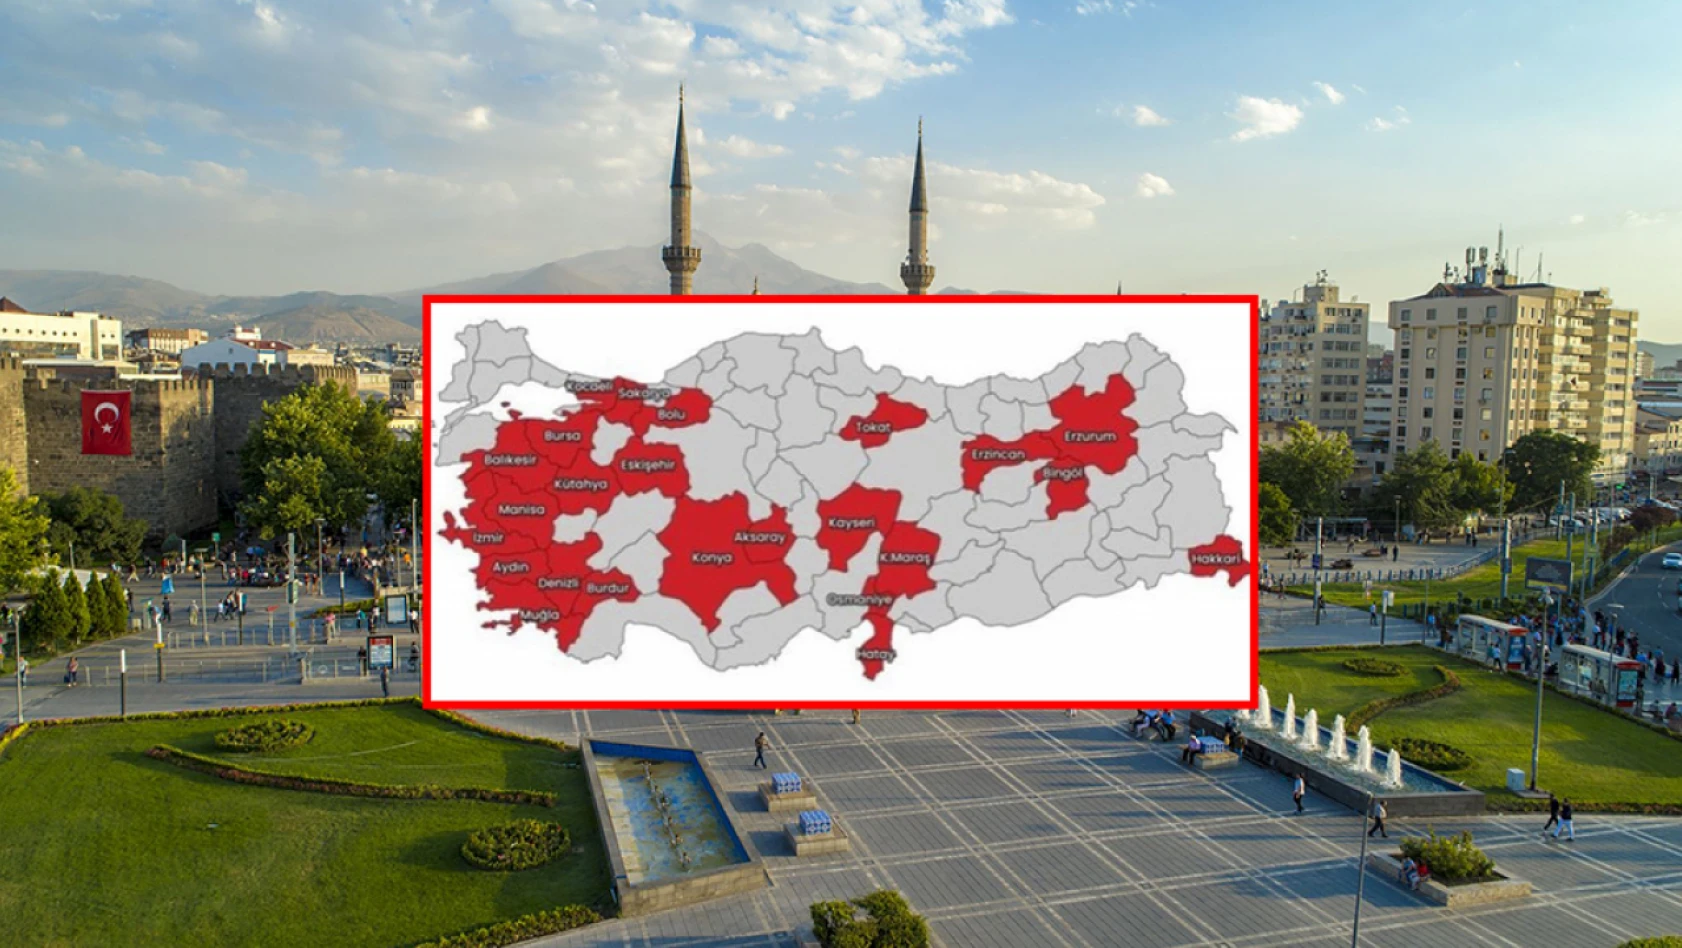 Korkutan Kayseri Deprem Raporu - Kayseri tehdit altında mı?